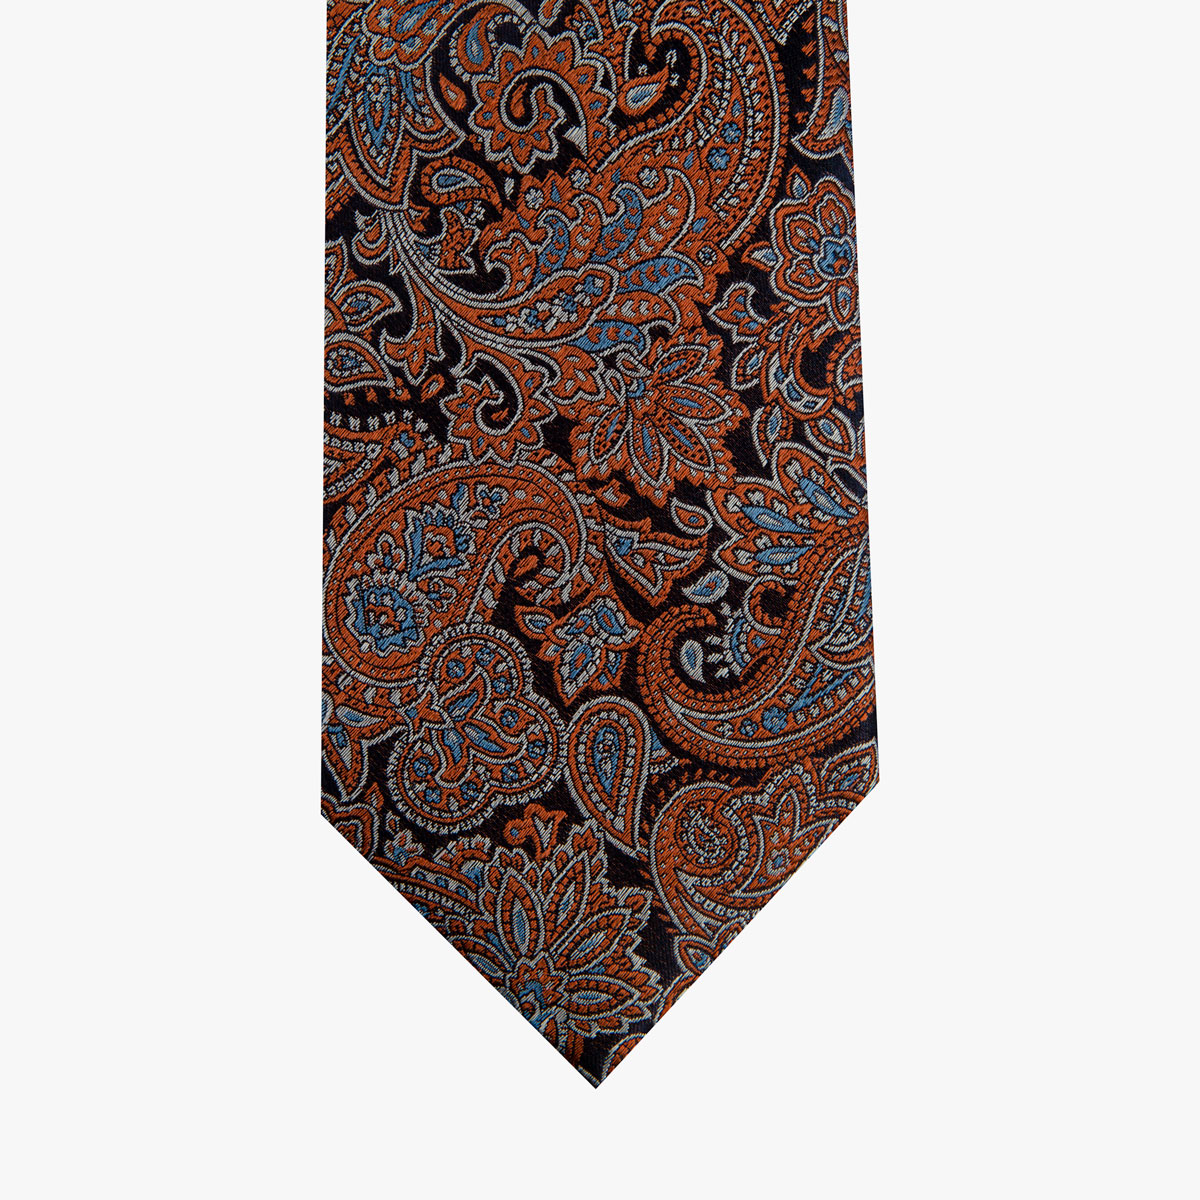 Glatte Krawatte mit Paisley-Muster in kupfer und blau